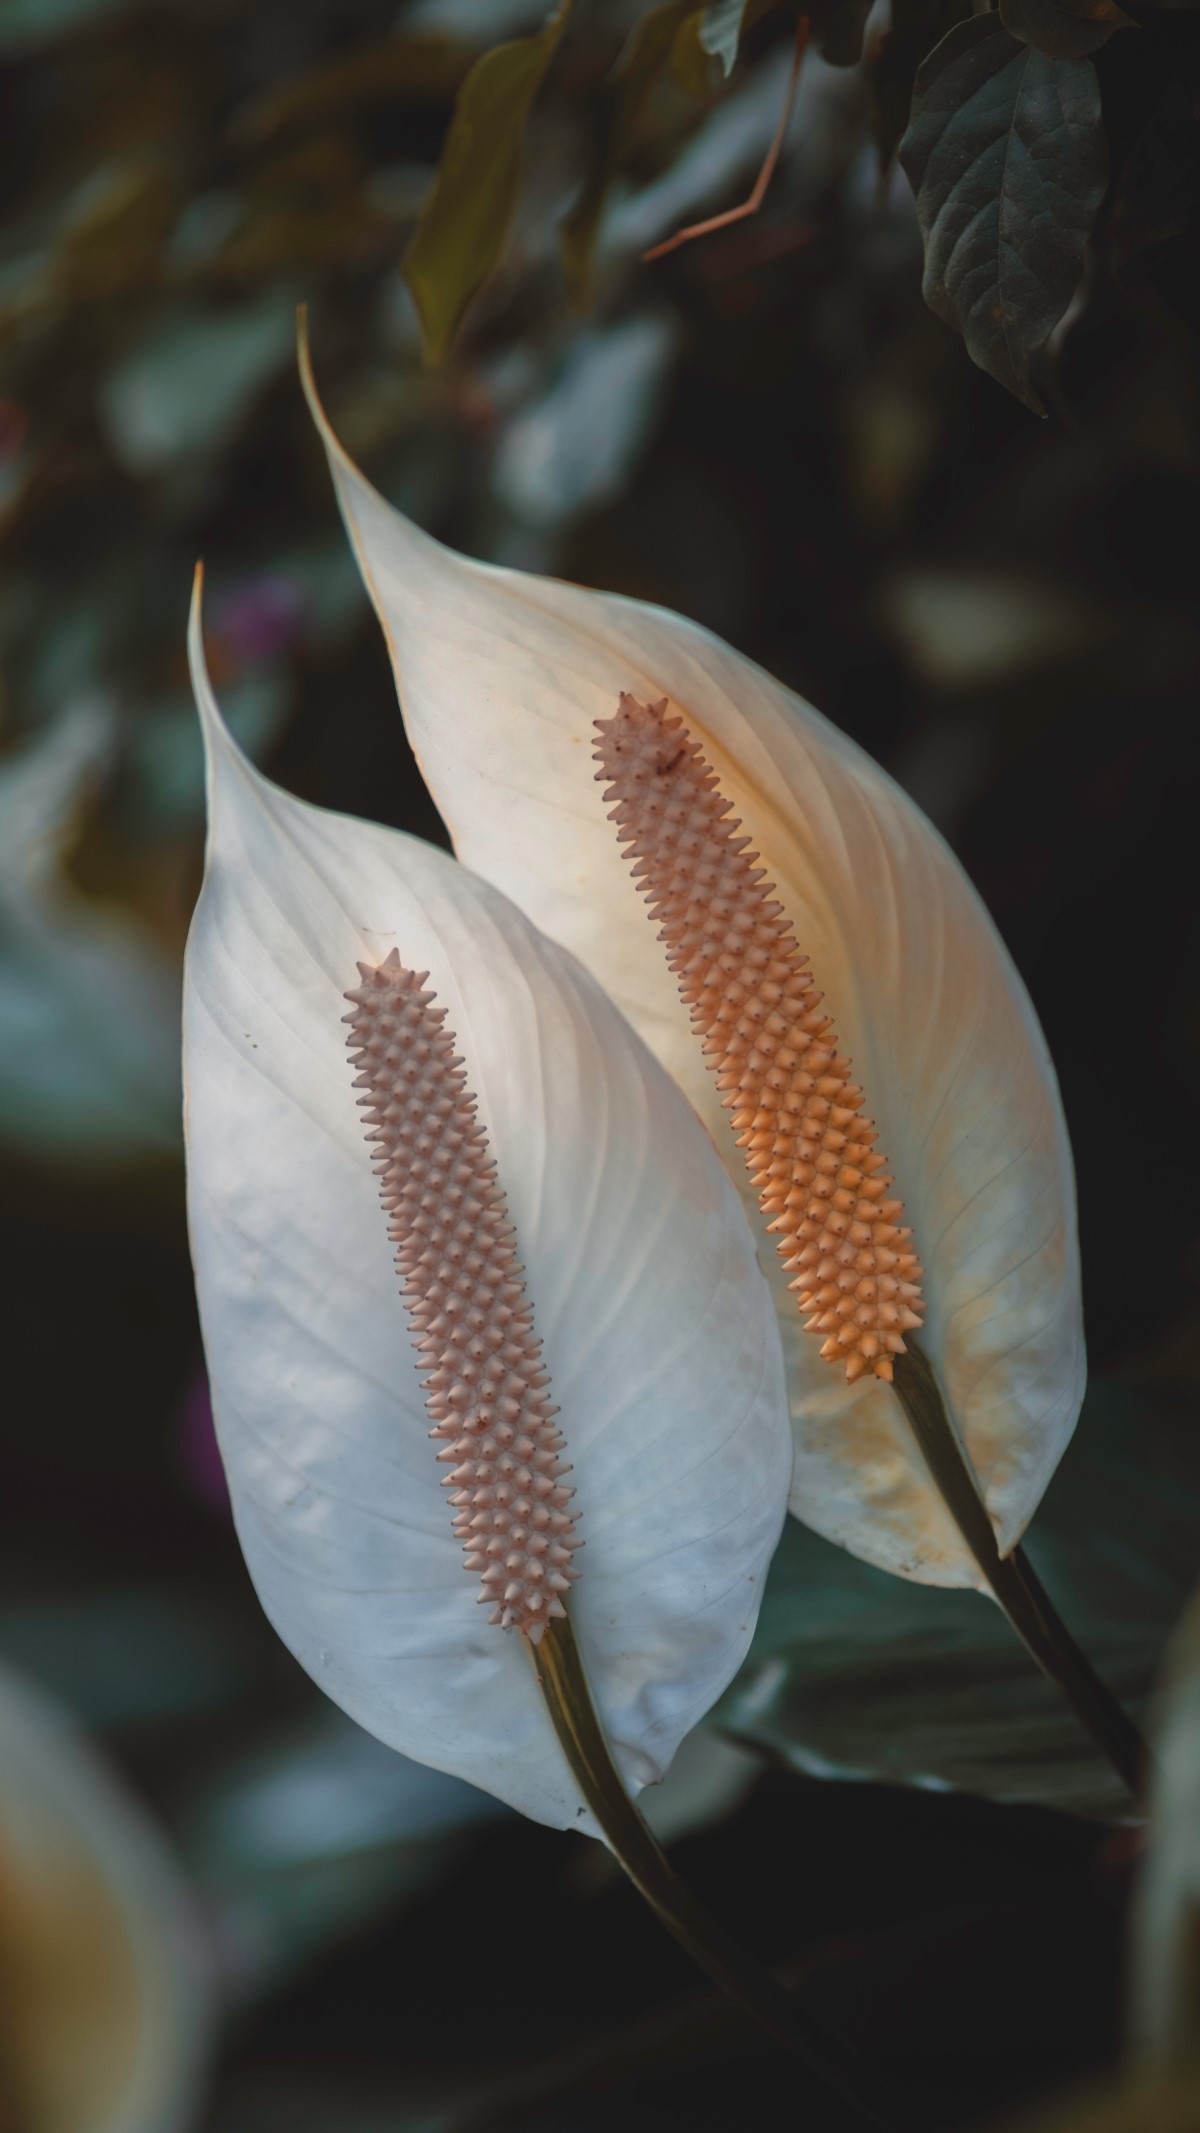 Uma curiosidade dessa flor bem peculiar é que ao invés de pétalas, ela possui espigas (Foto: Pexels / Melvin Vito / CreativeCommons)